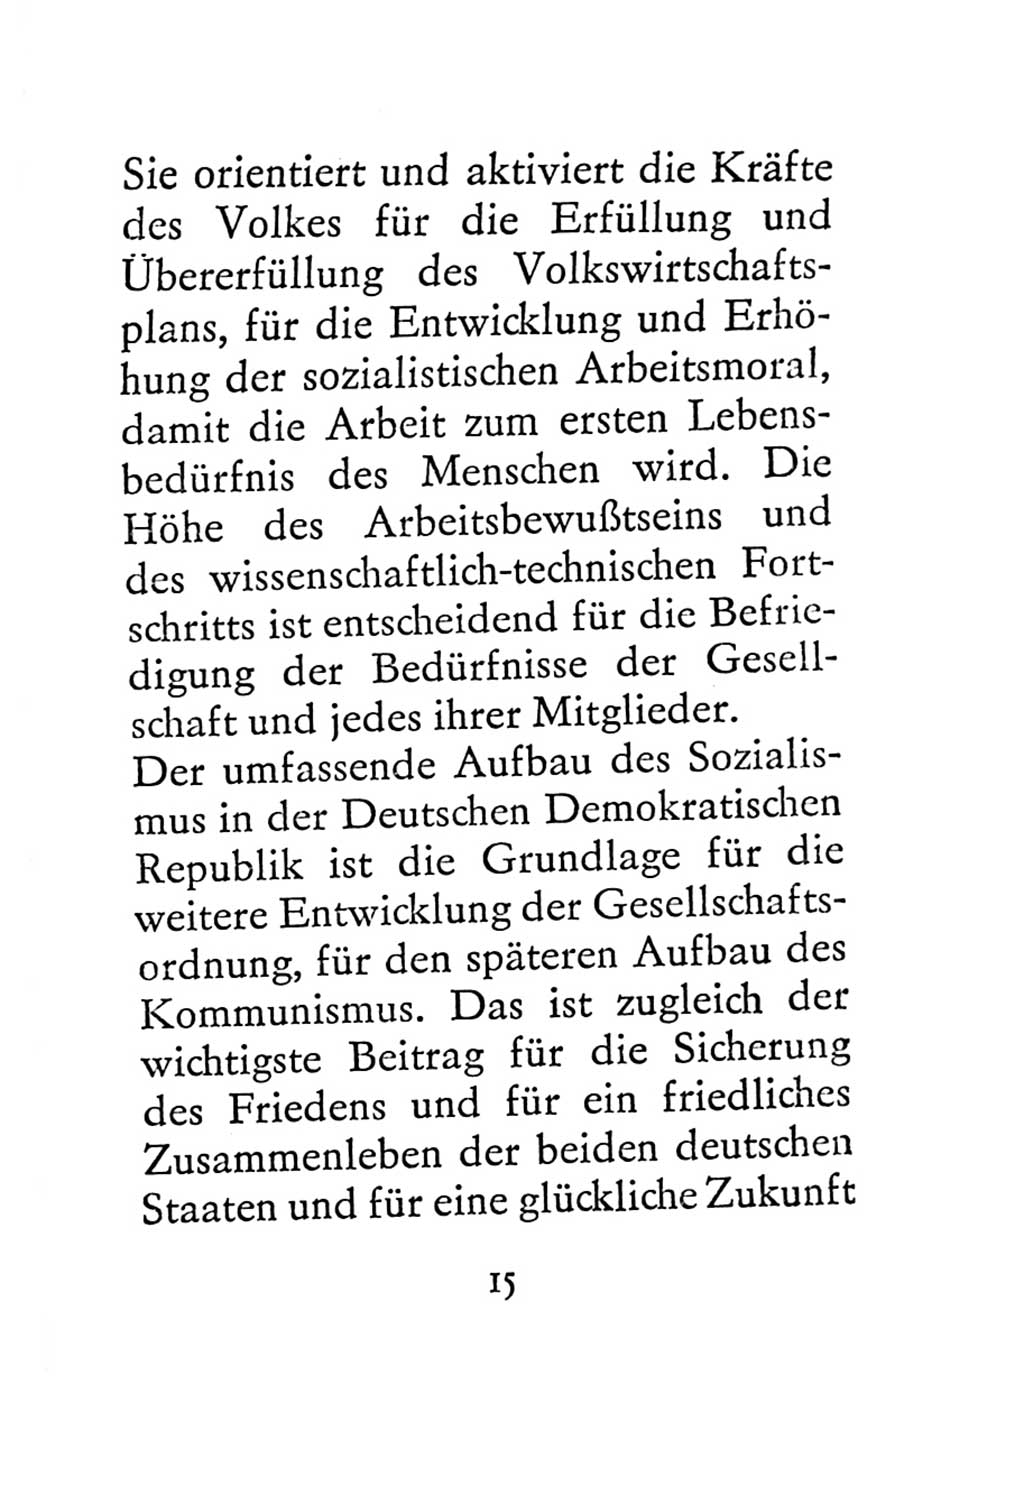 Statut der Sozialistischen Einheitspartei Deutschlands (SED) 1967, Seite 15 (St. SED DDR 1967, S. 15)